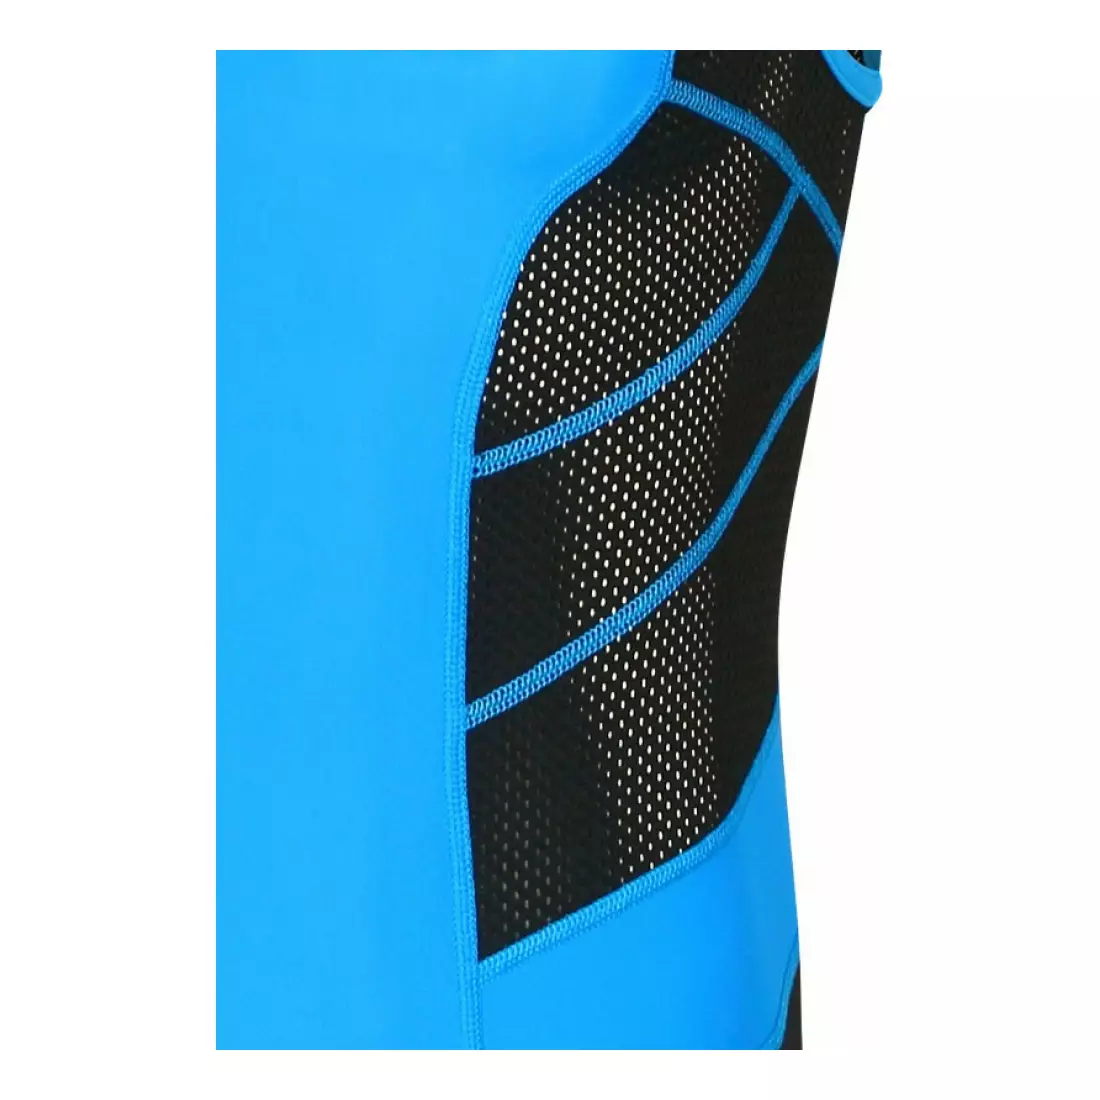 Costum de triatlon pentru bărbați DEKO TRST-203, negru și albastru